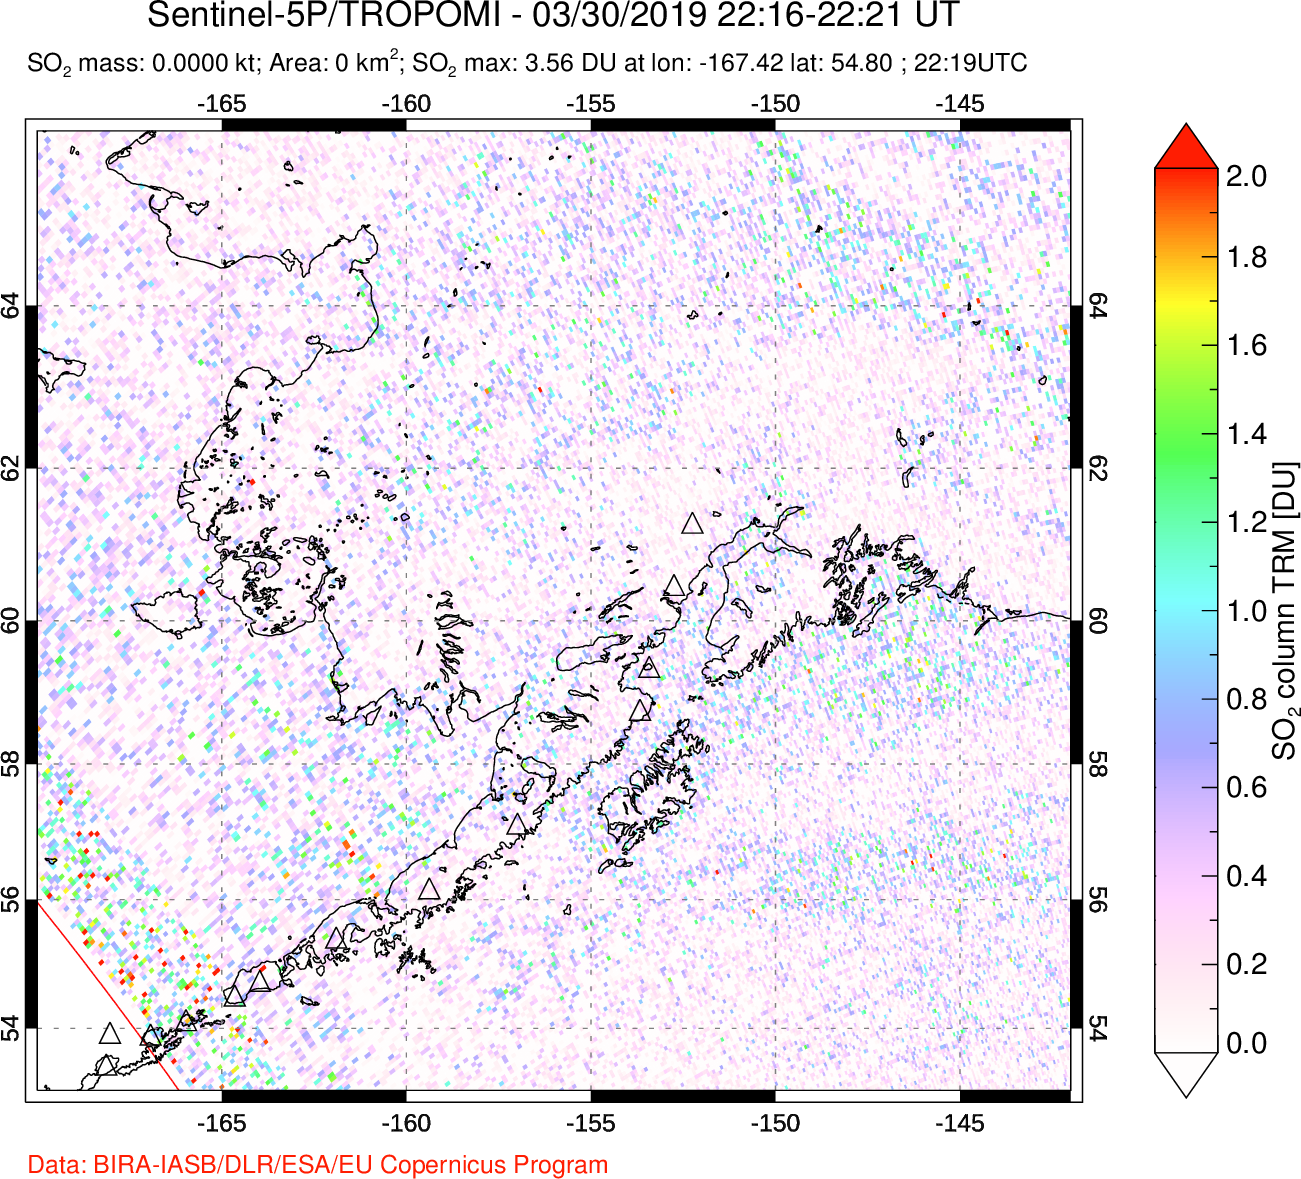 A sulfur dioxide image over Alaska, USA on Mar 30, 2019.